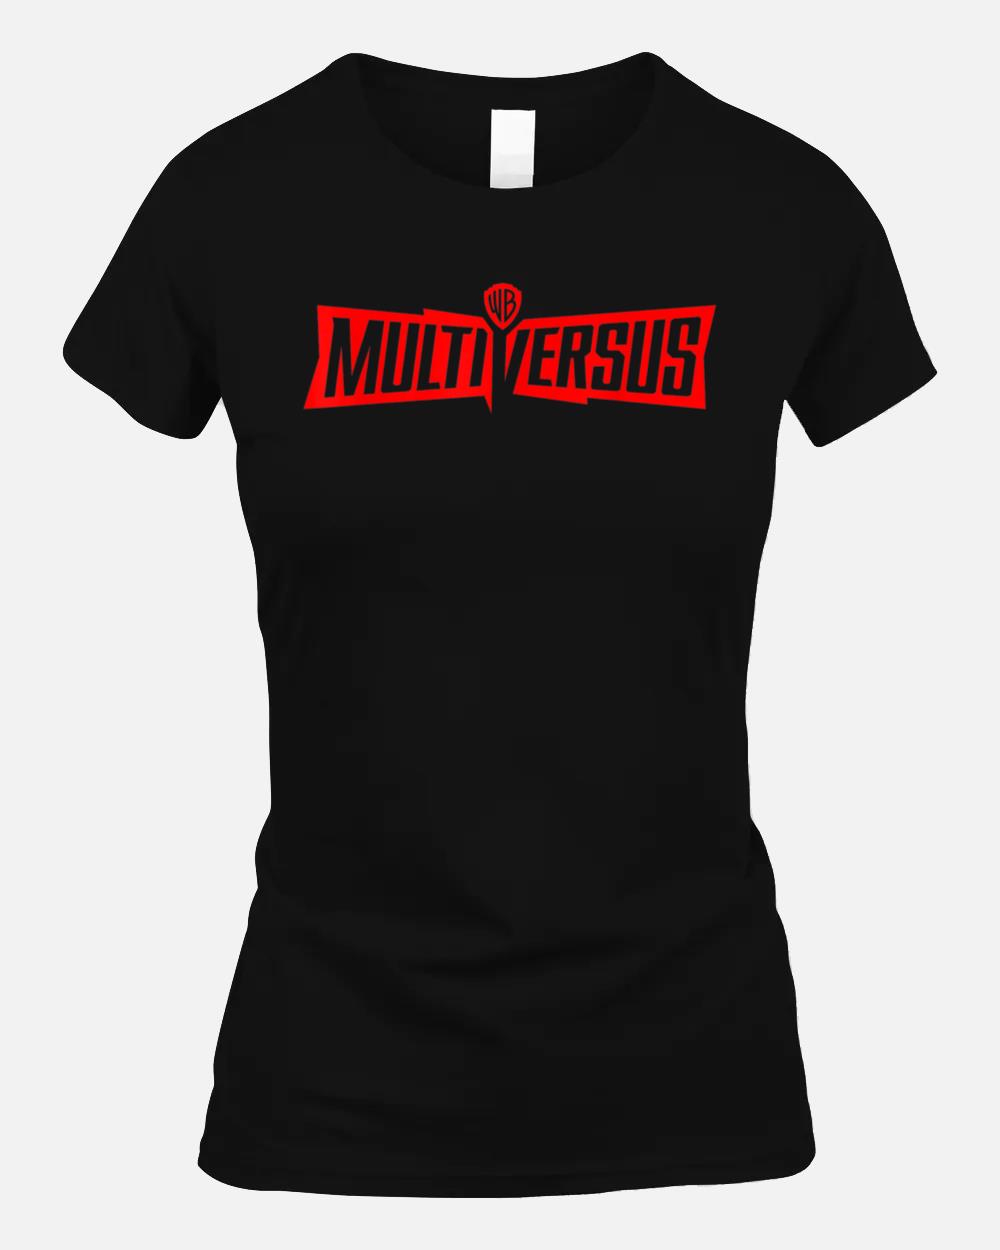 MULTIVERSUS MULTI VERSUS Unisex T-Shirt